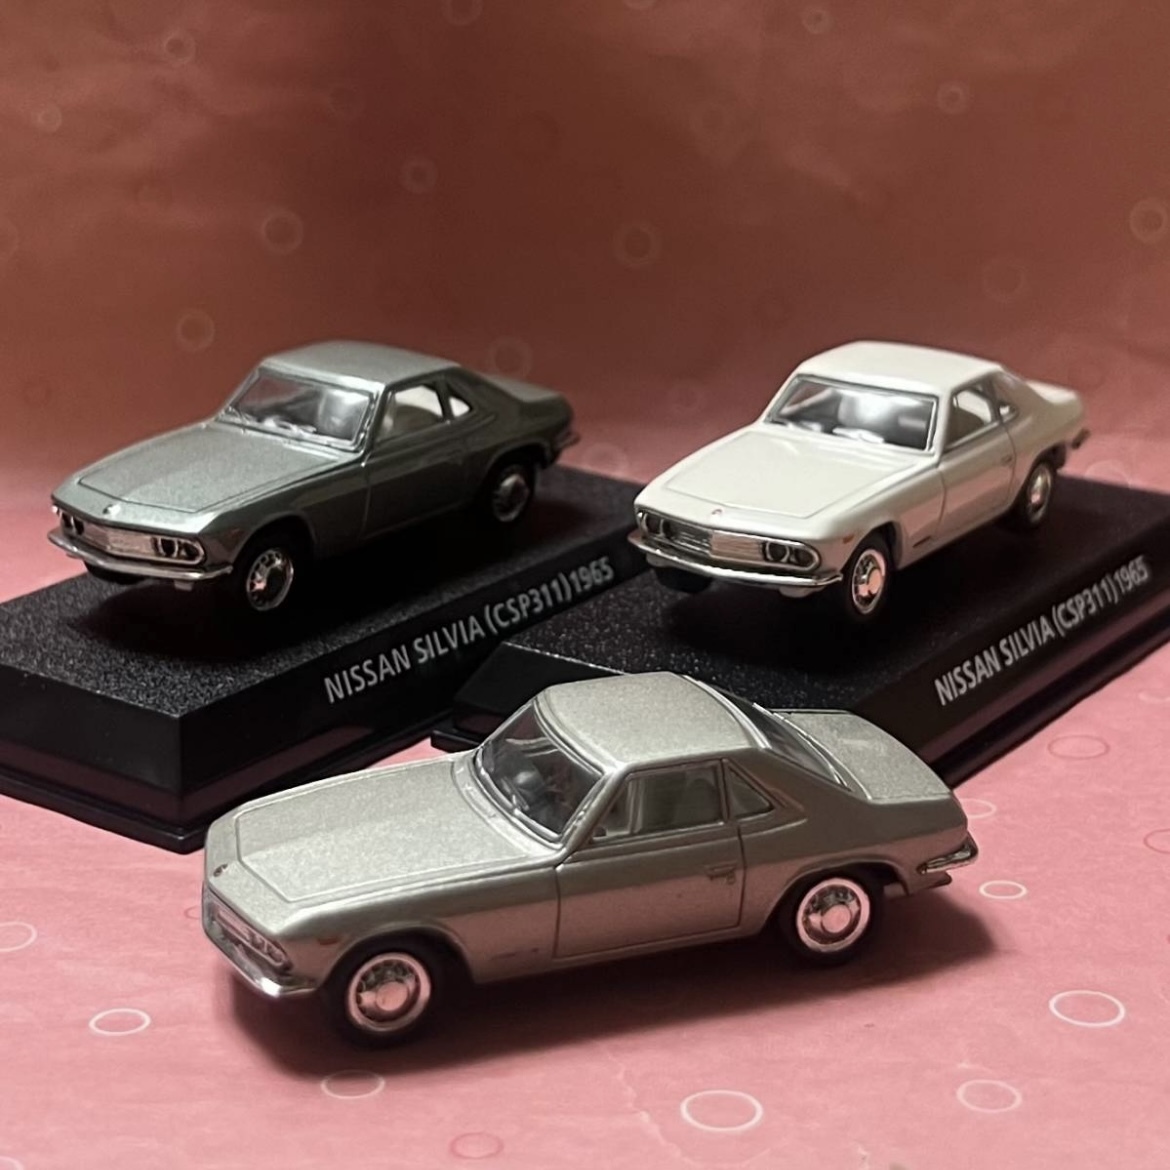 * распроданный известная машина коллекция Nissan Silvia (CSP311) первое поколение светло-зеленый, серебряный, слоновая кость 3 шт. set[.. блиц-цена ] включая доставку 